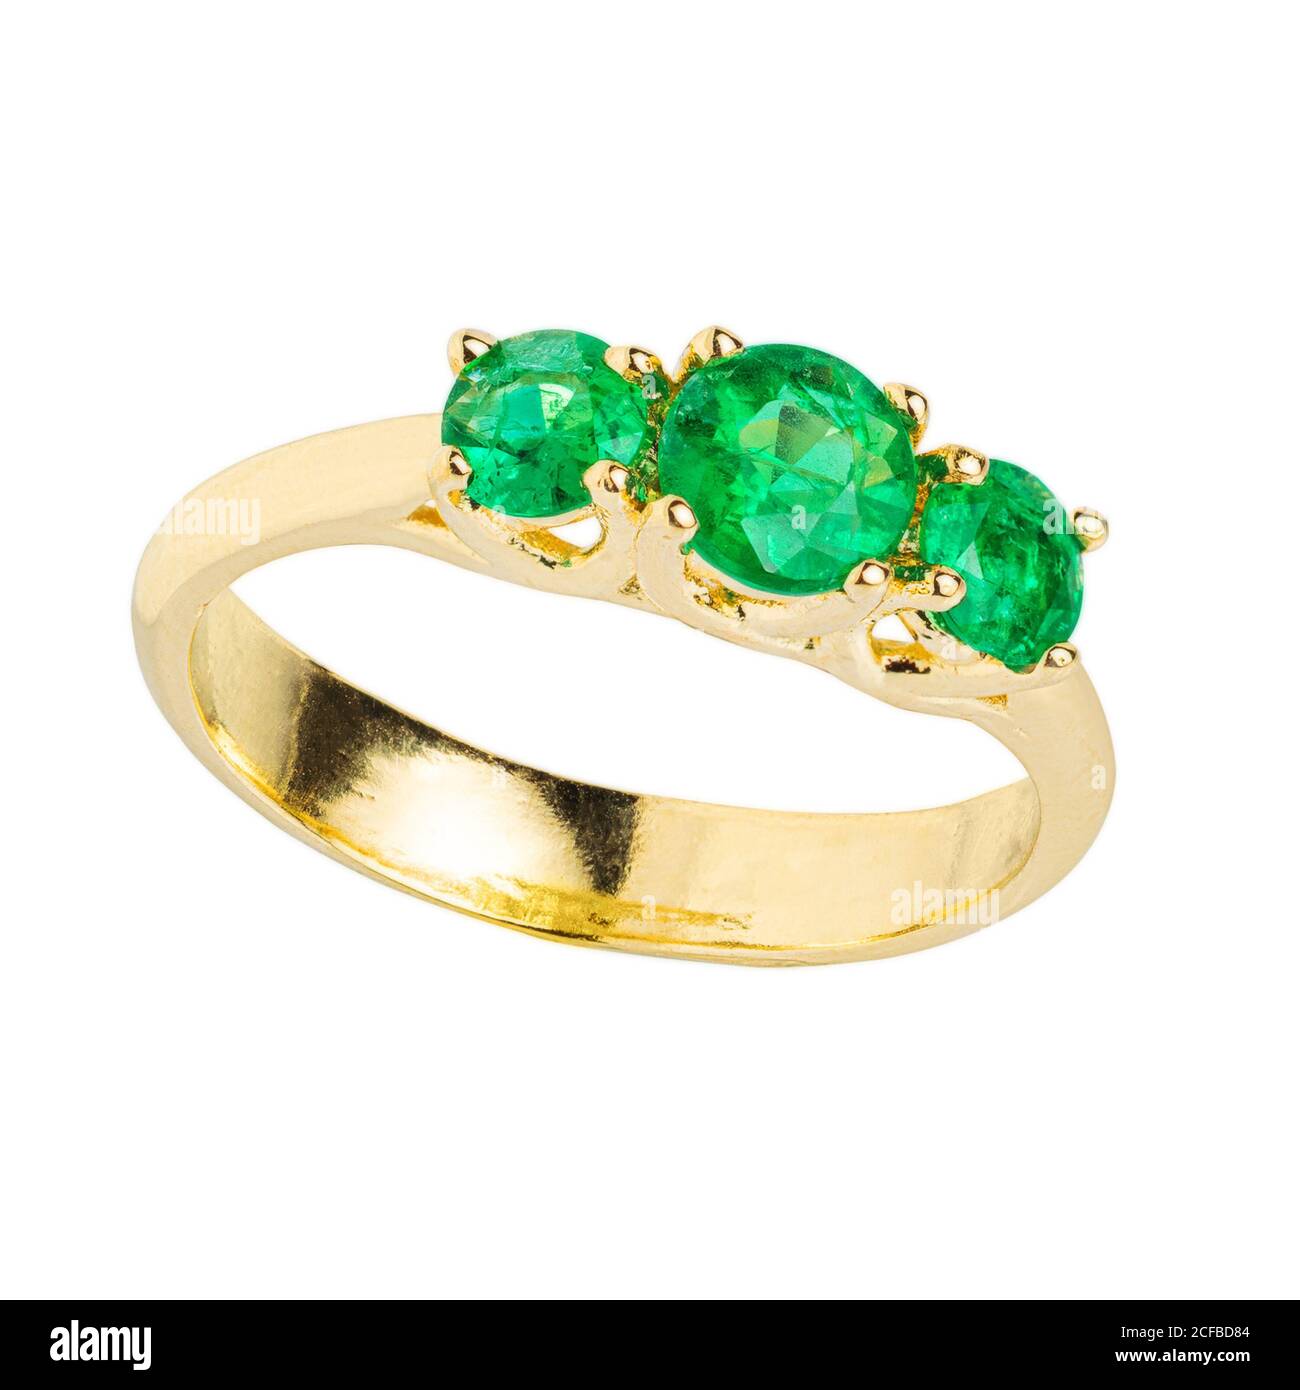 Gold diamond and gemstone wedding ring closeup macro isolated on white background Stock Photo